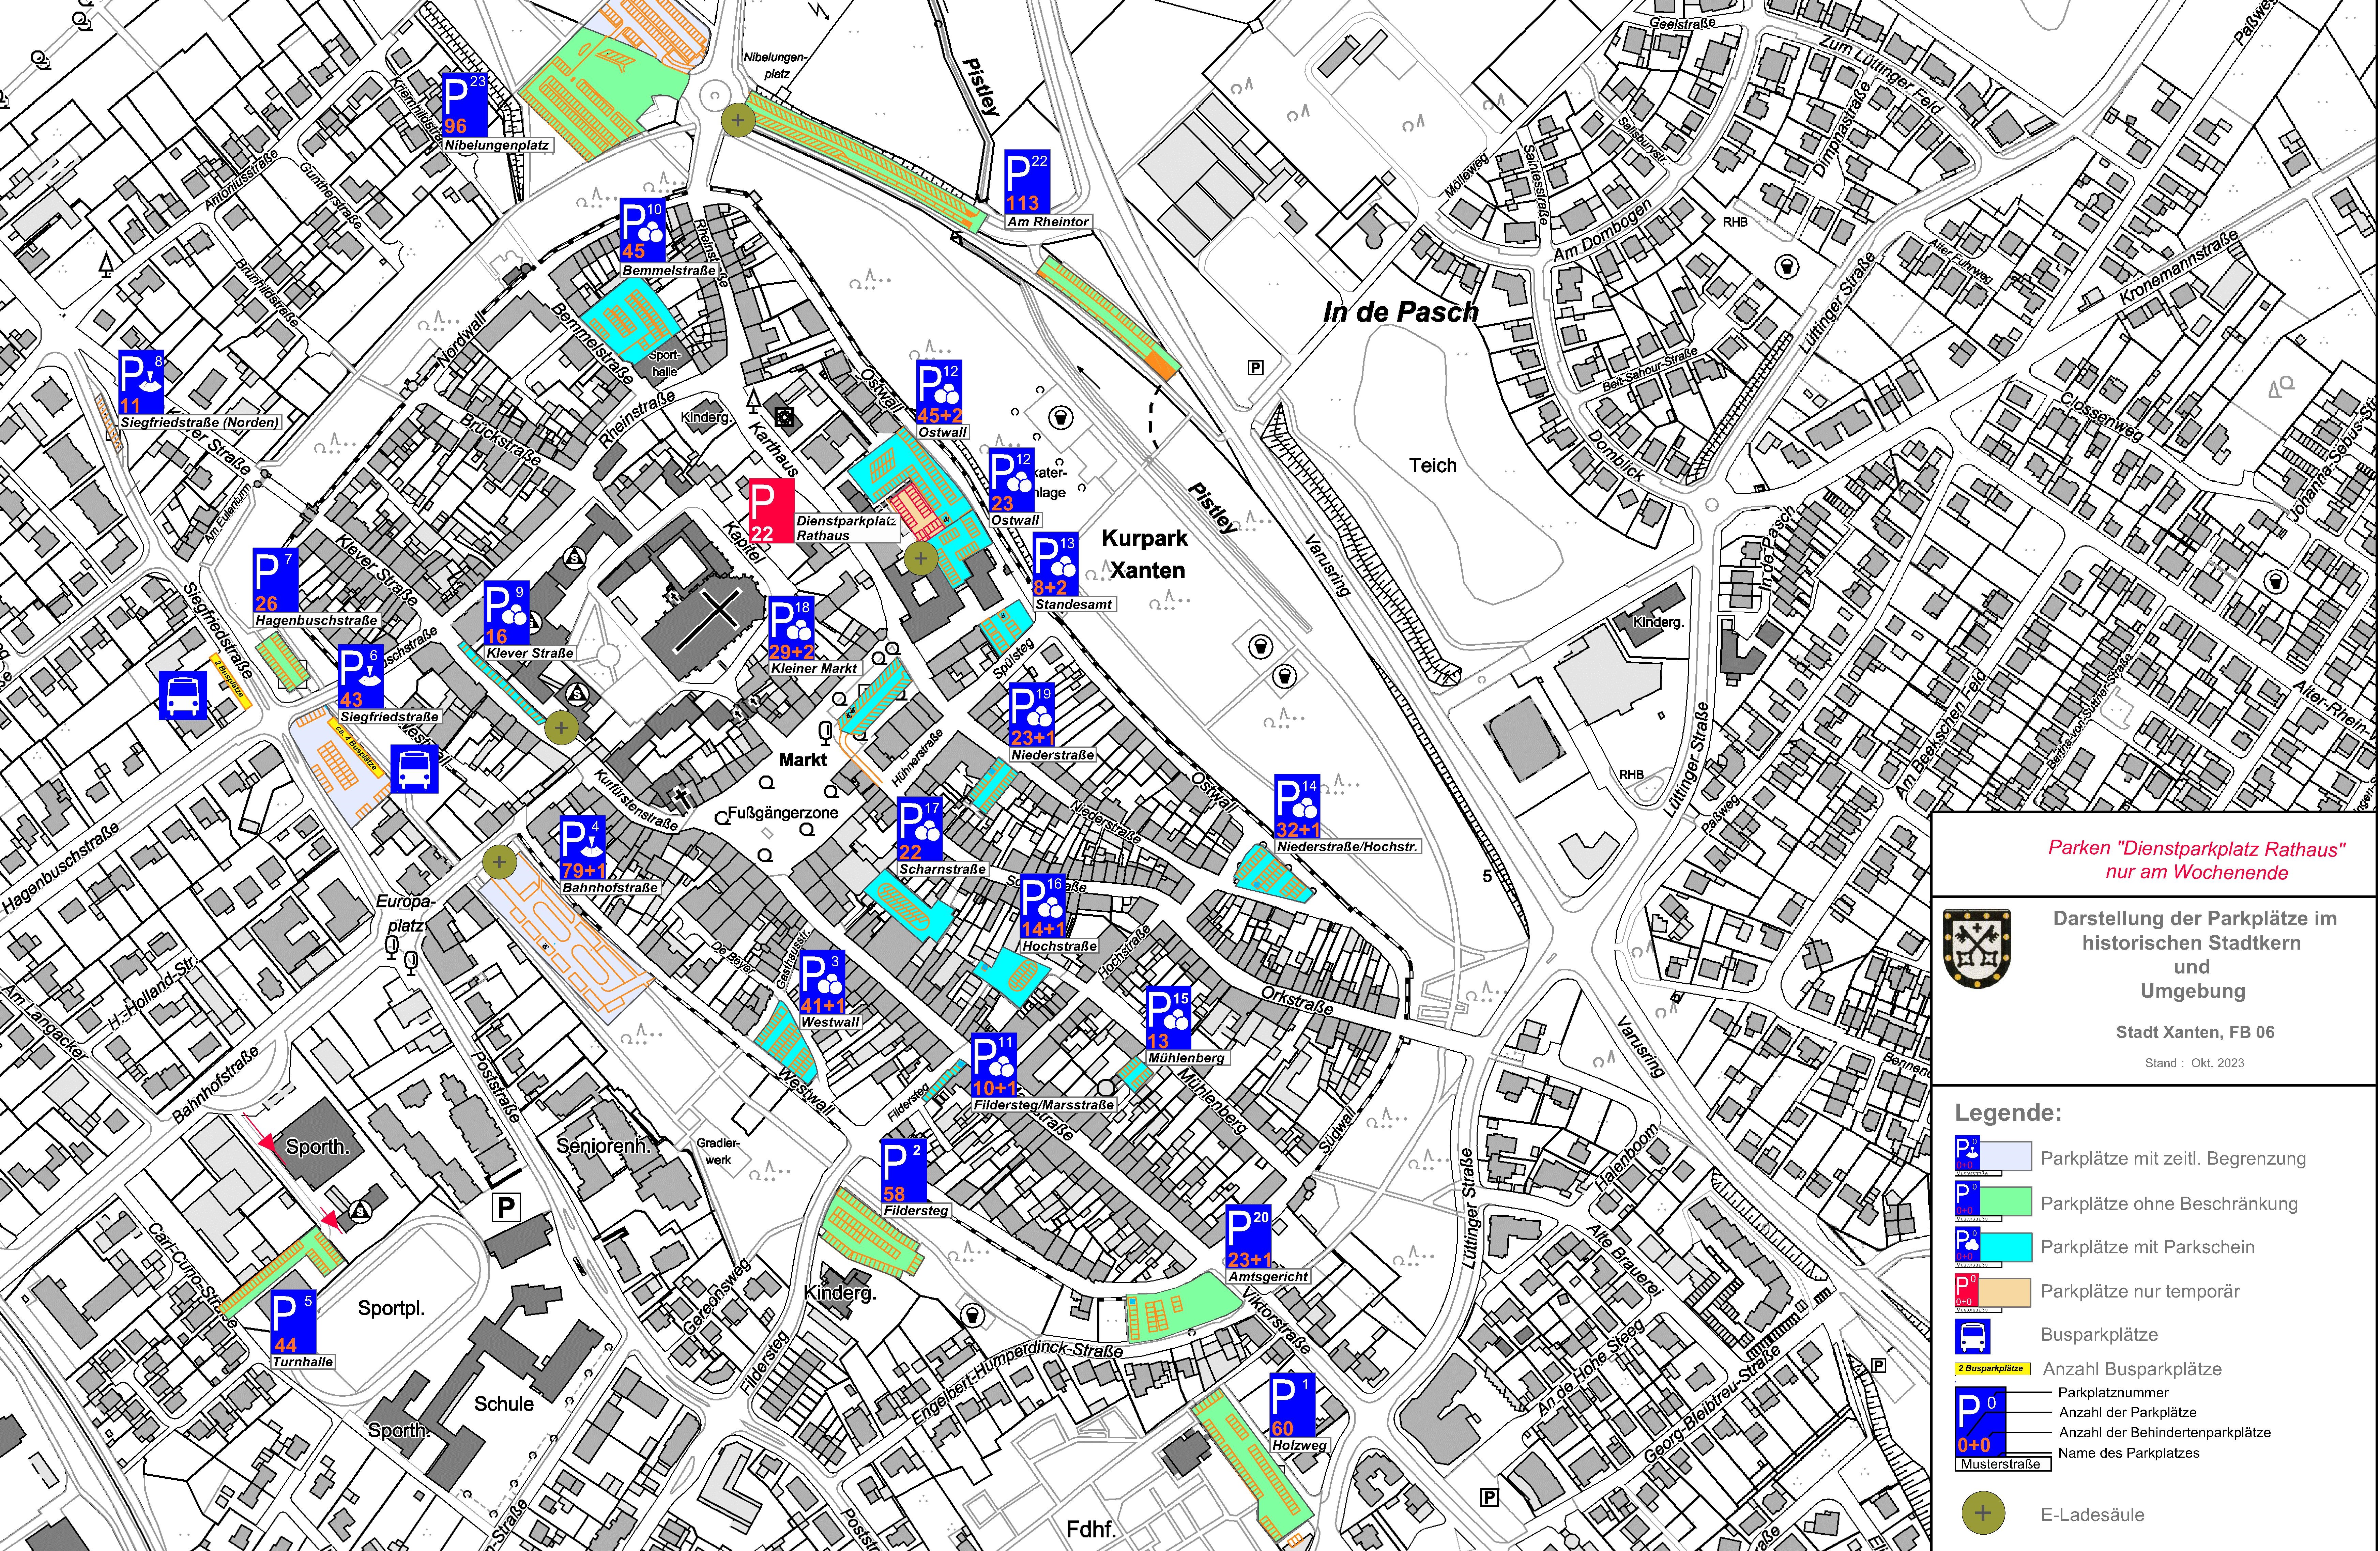 Kartenausschnitt aus dem die Innenstadt von Xanten zu sehen ist. Auf der Karte sind die Parkplätze hervorgehoben.